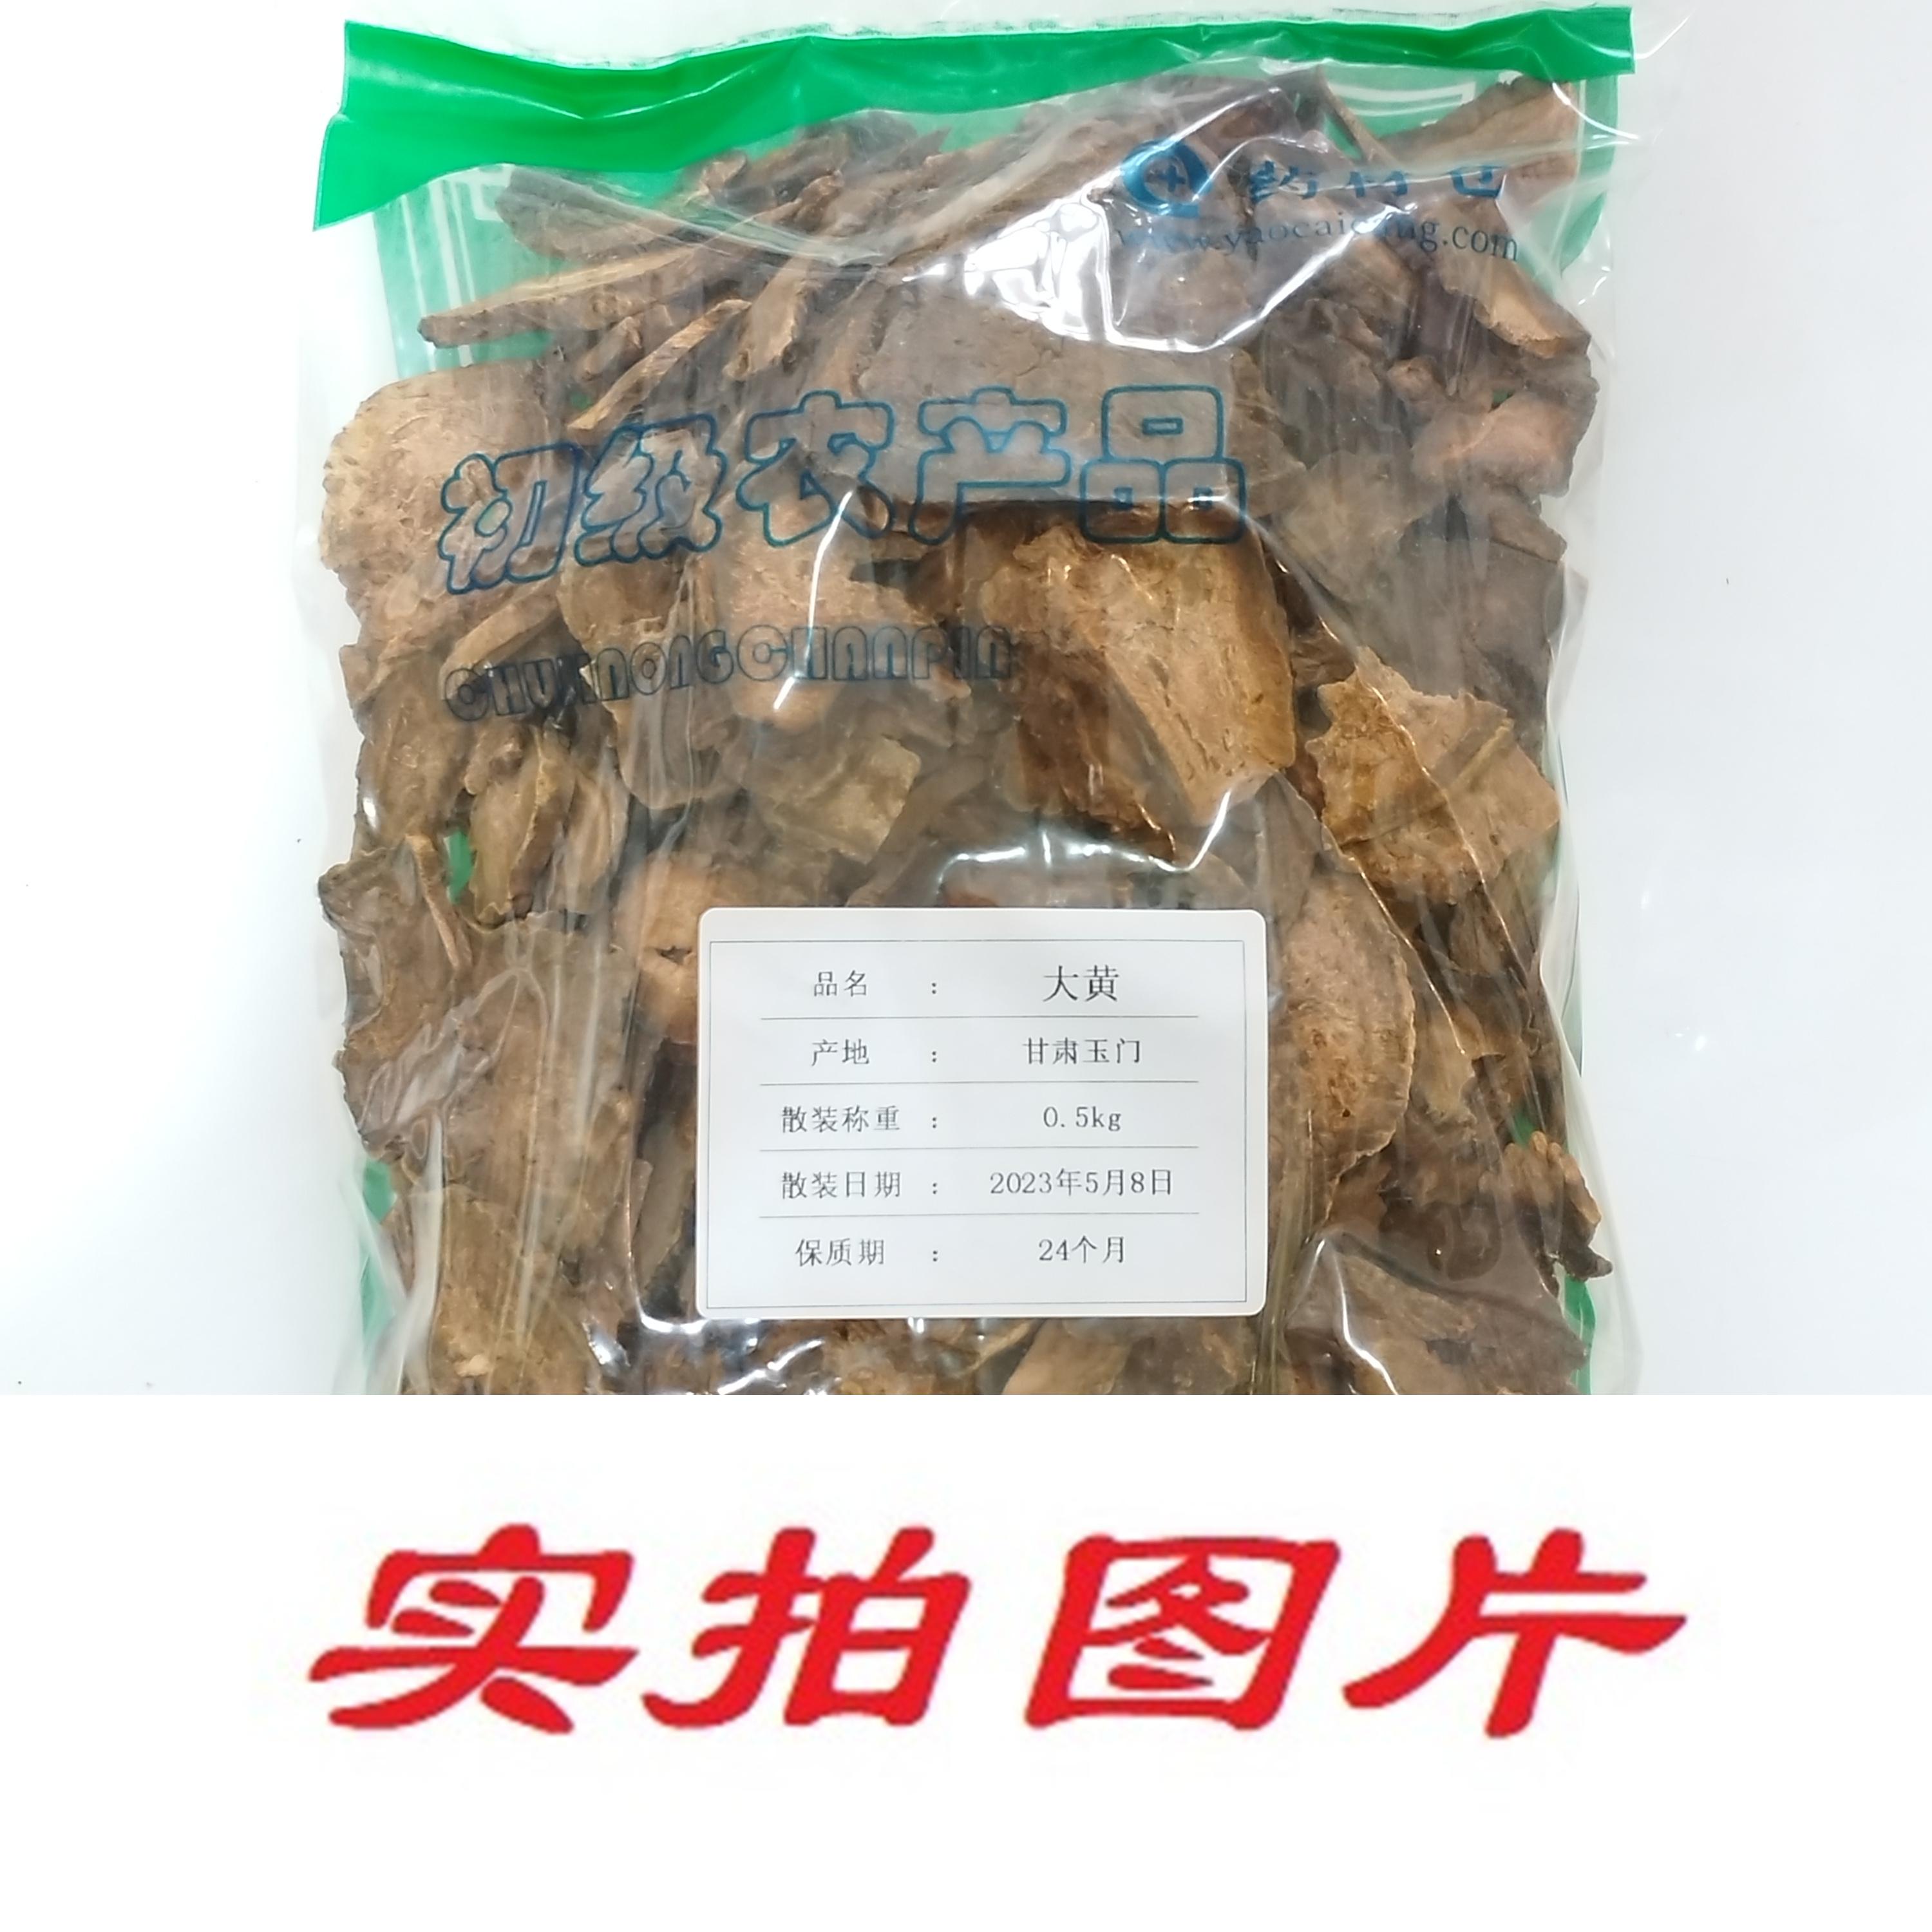 【】大黄0.5kg-农副产品